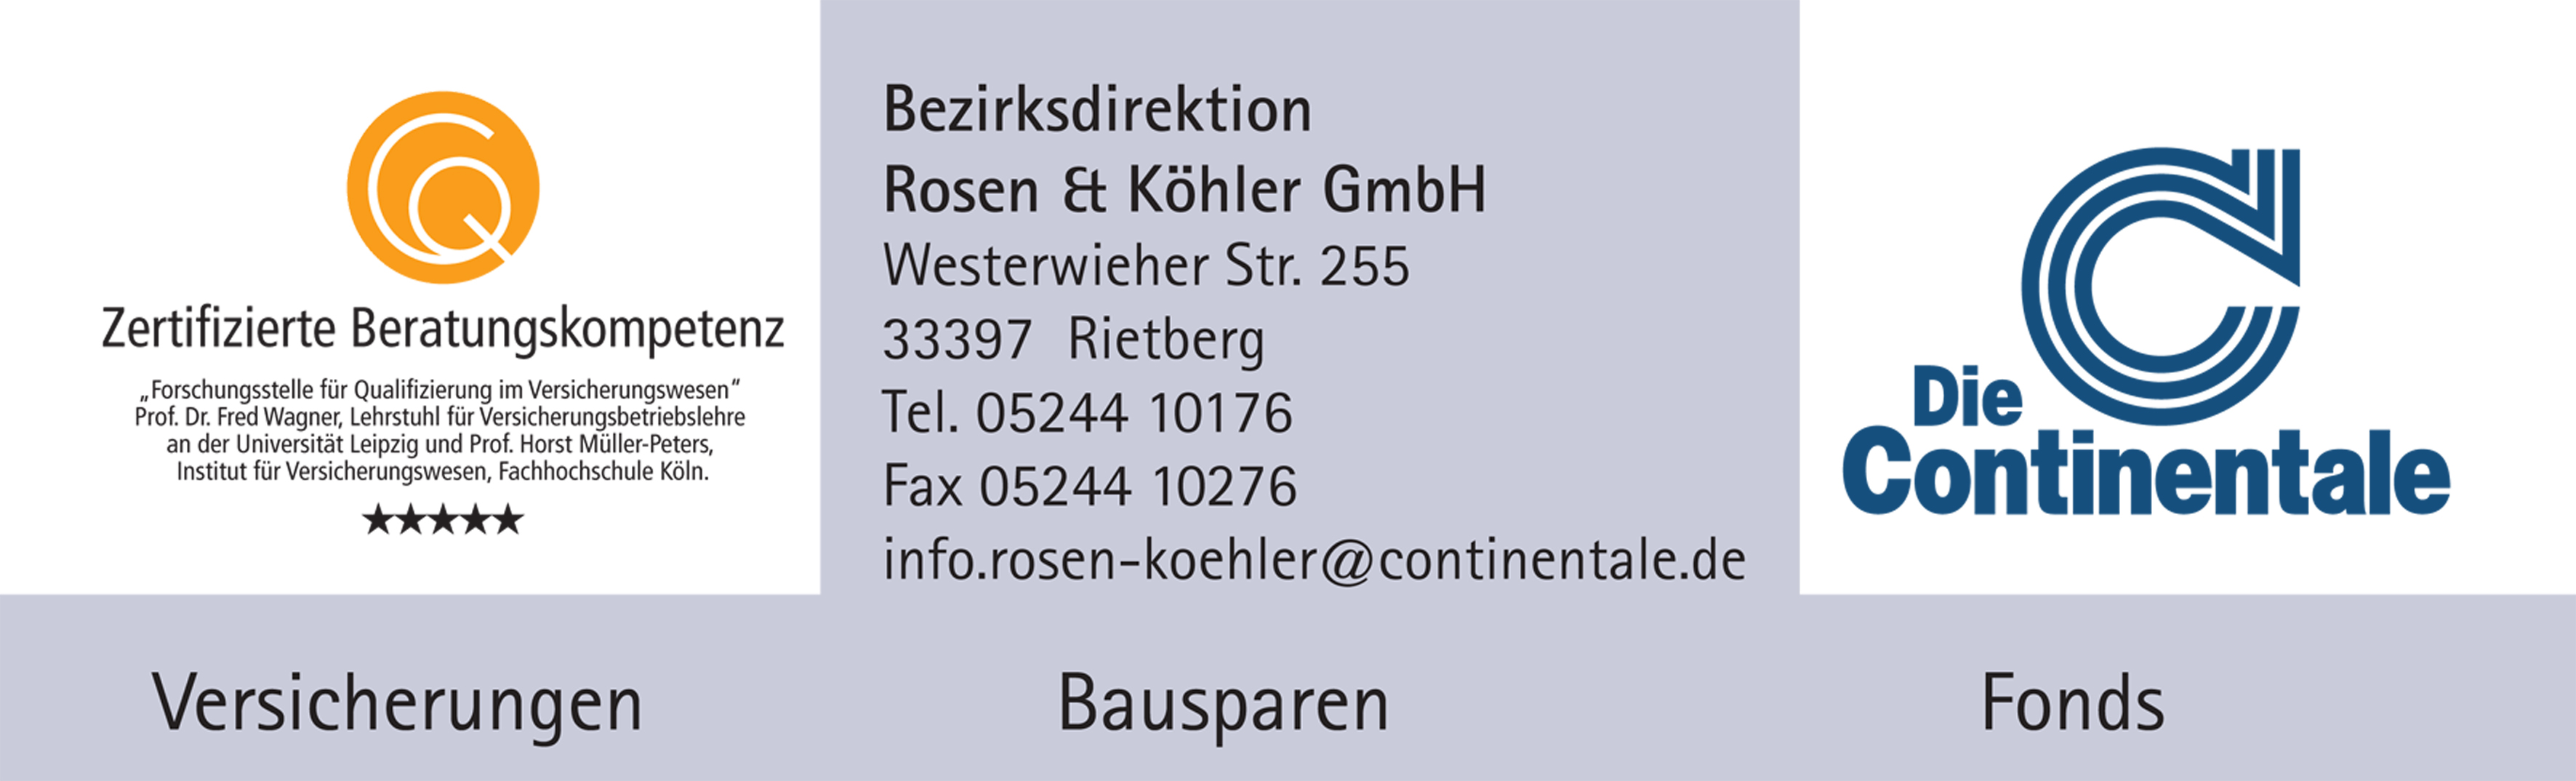 Die Continentale Bezirksdirektion, Rosen & Köhler GmbH